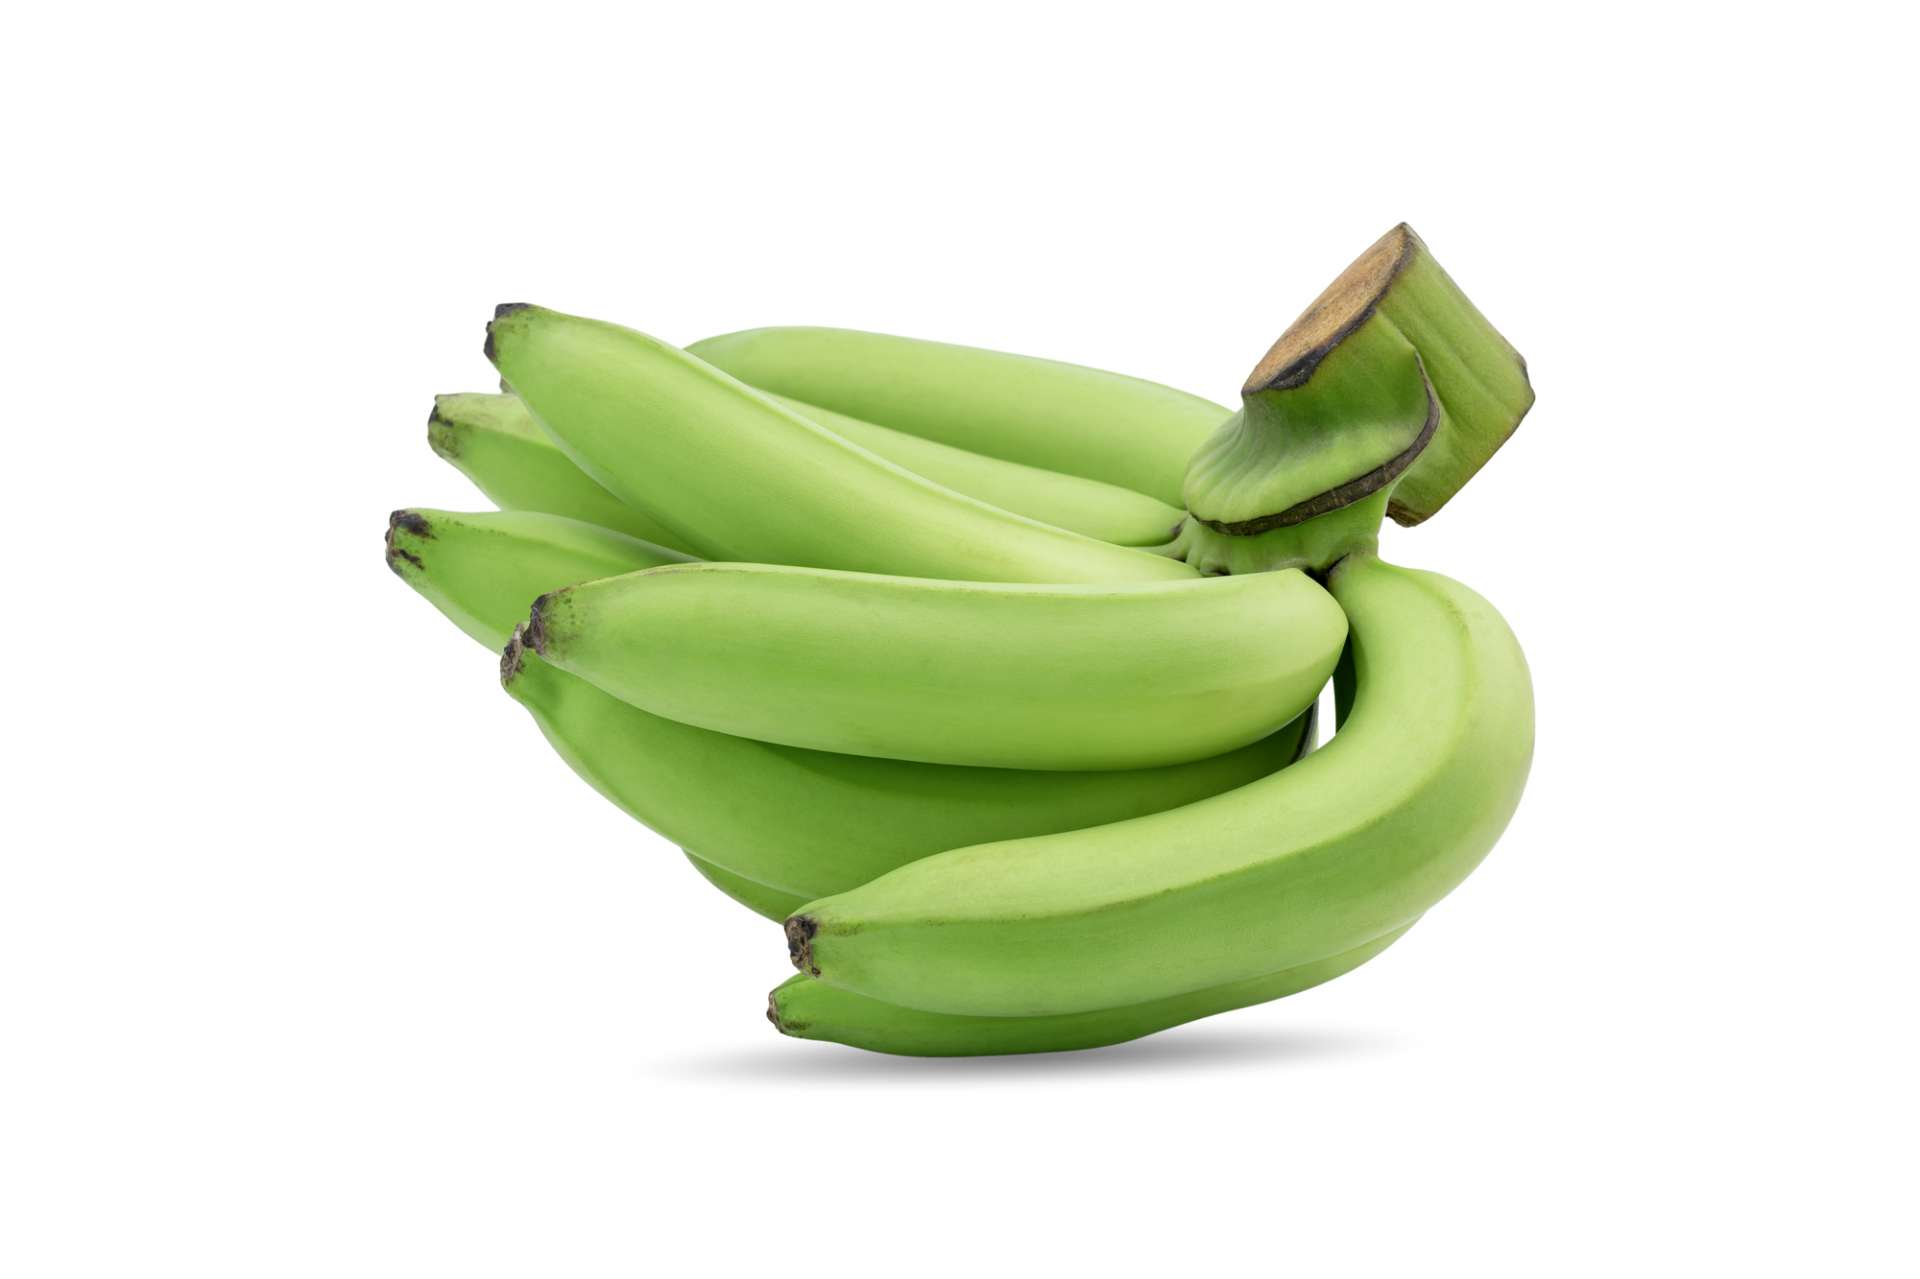 バナナの収穫体験を行い気軽にバナナ栽培に携わる機会をご提供